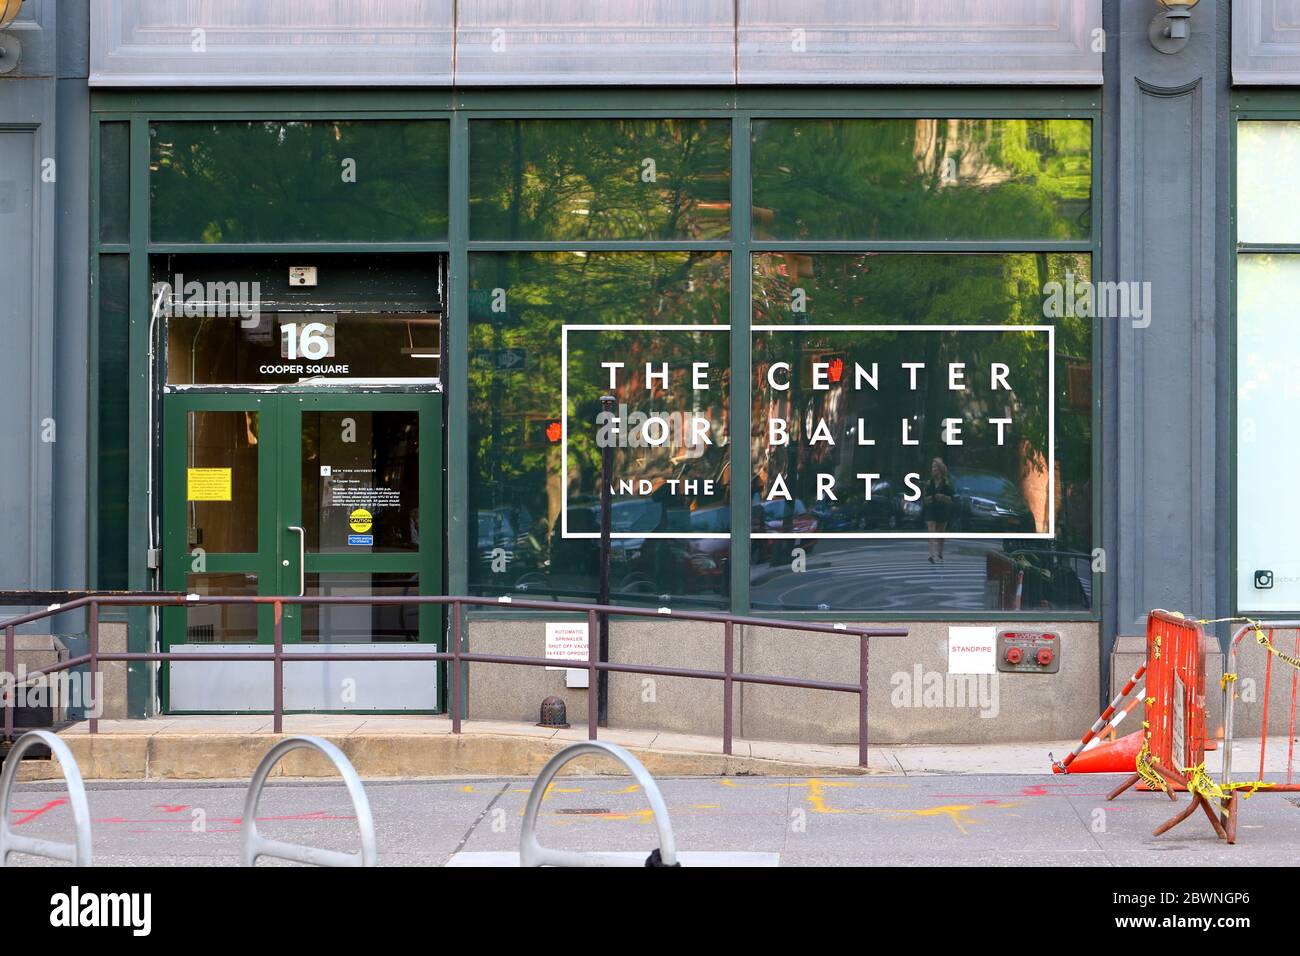 Das Zentrum für Ballett und die Künste, 16-20 Cooper Square, New York, NY. Außenansicht einer Einrichtung der New York University für modernes Ballett und Choreographie Stockfoto